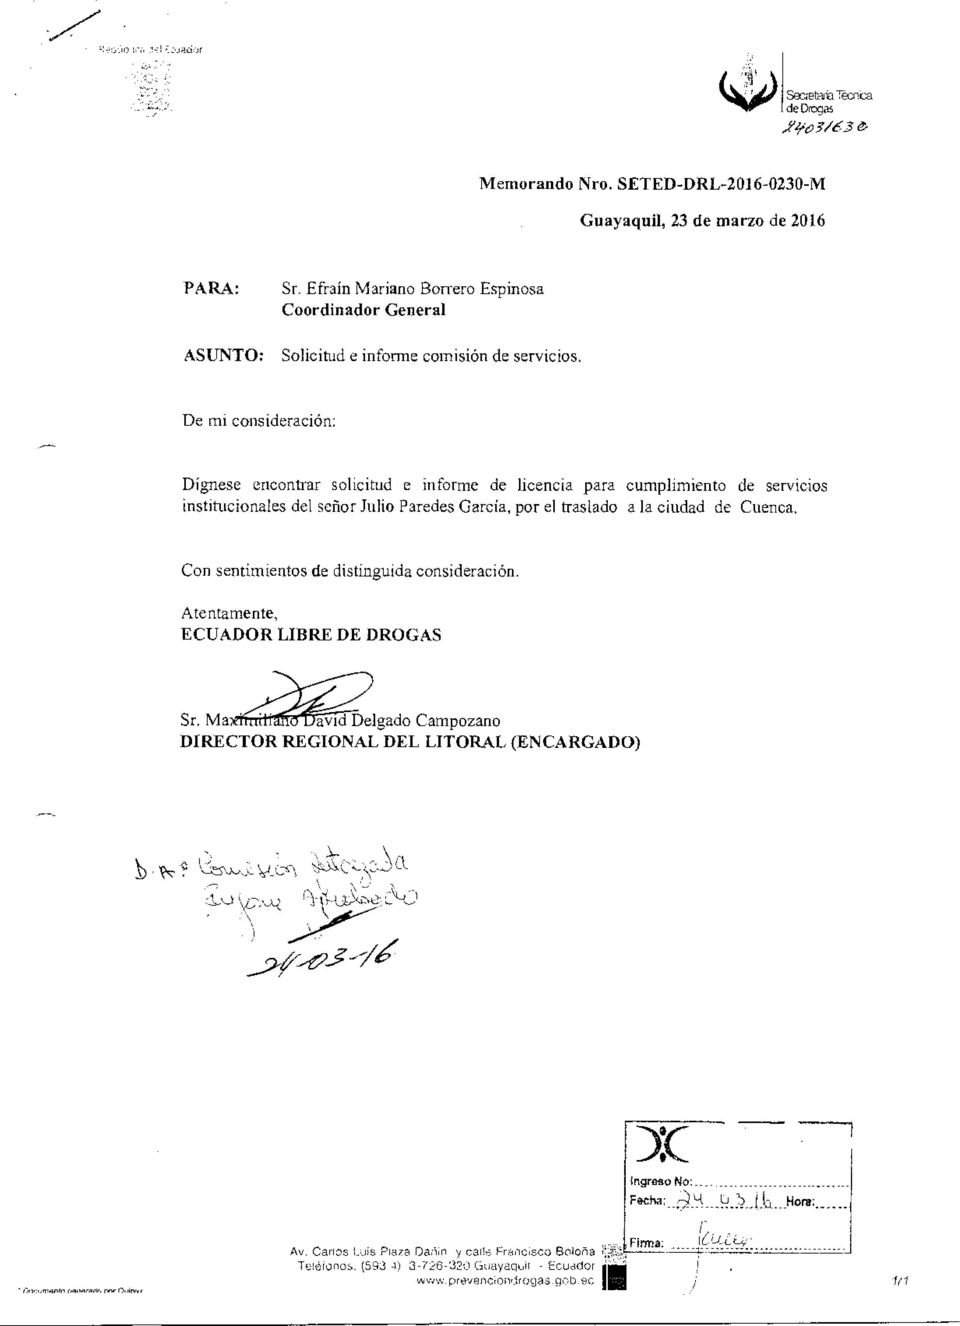 De mi consideración: Dígnese encontrar solicitud e informe de licencia para cumplimiento de servicios institucionales del señor Julio Paredes García, por el traslado a la ciudad de Cuenca.